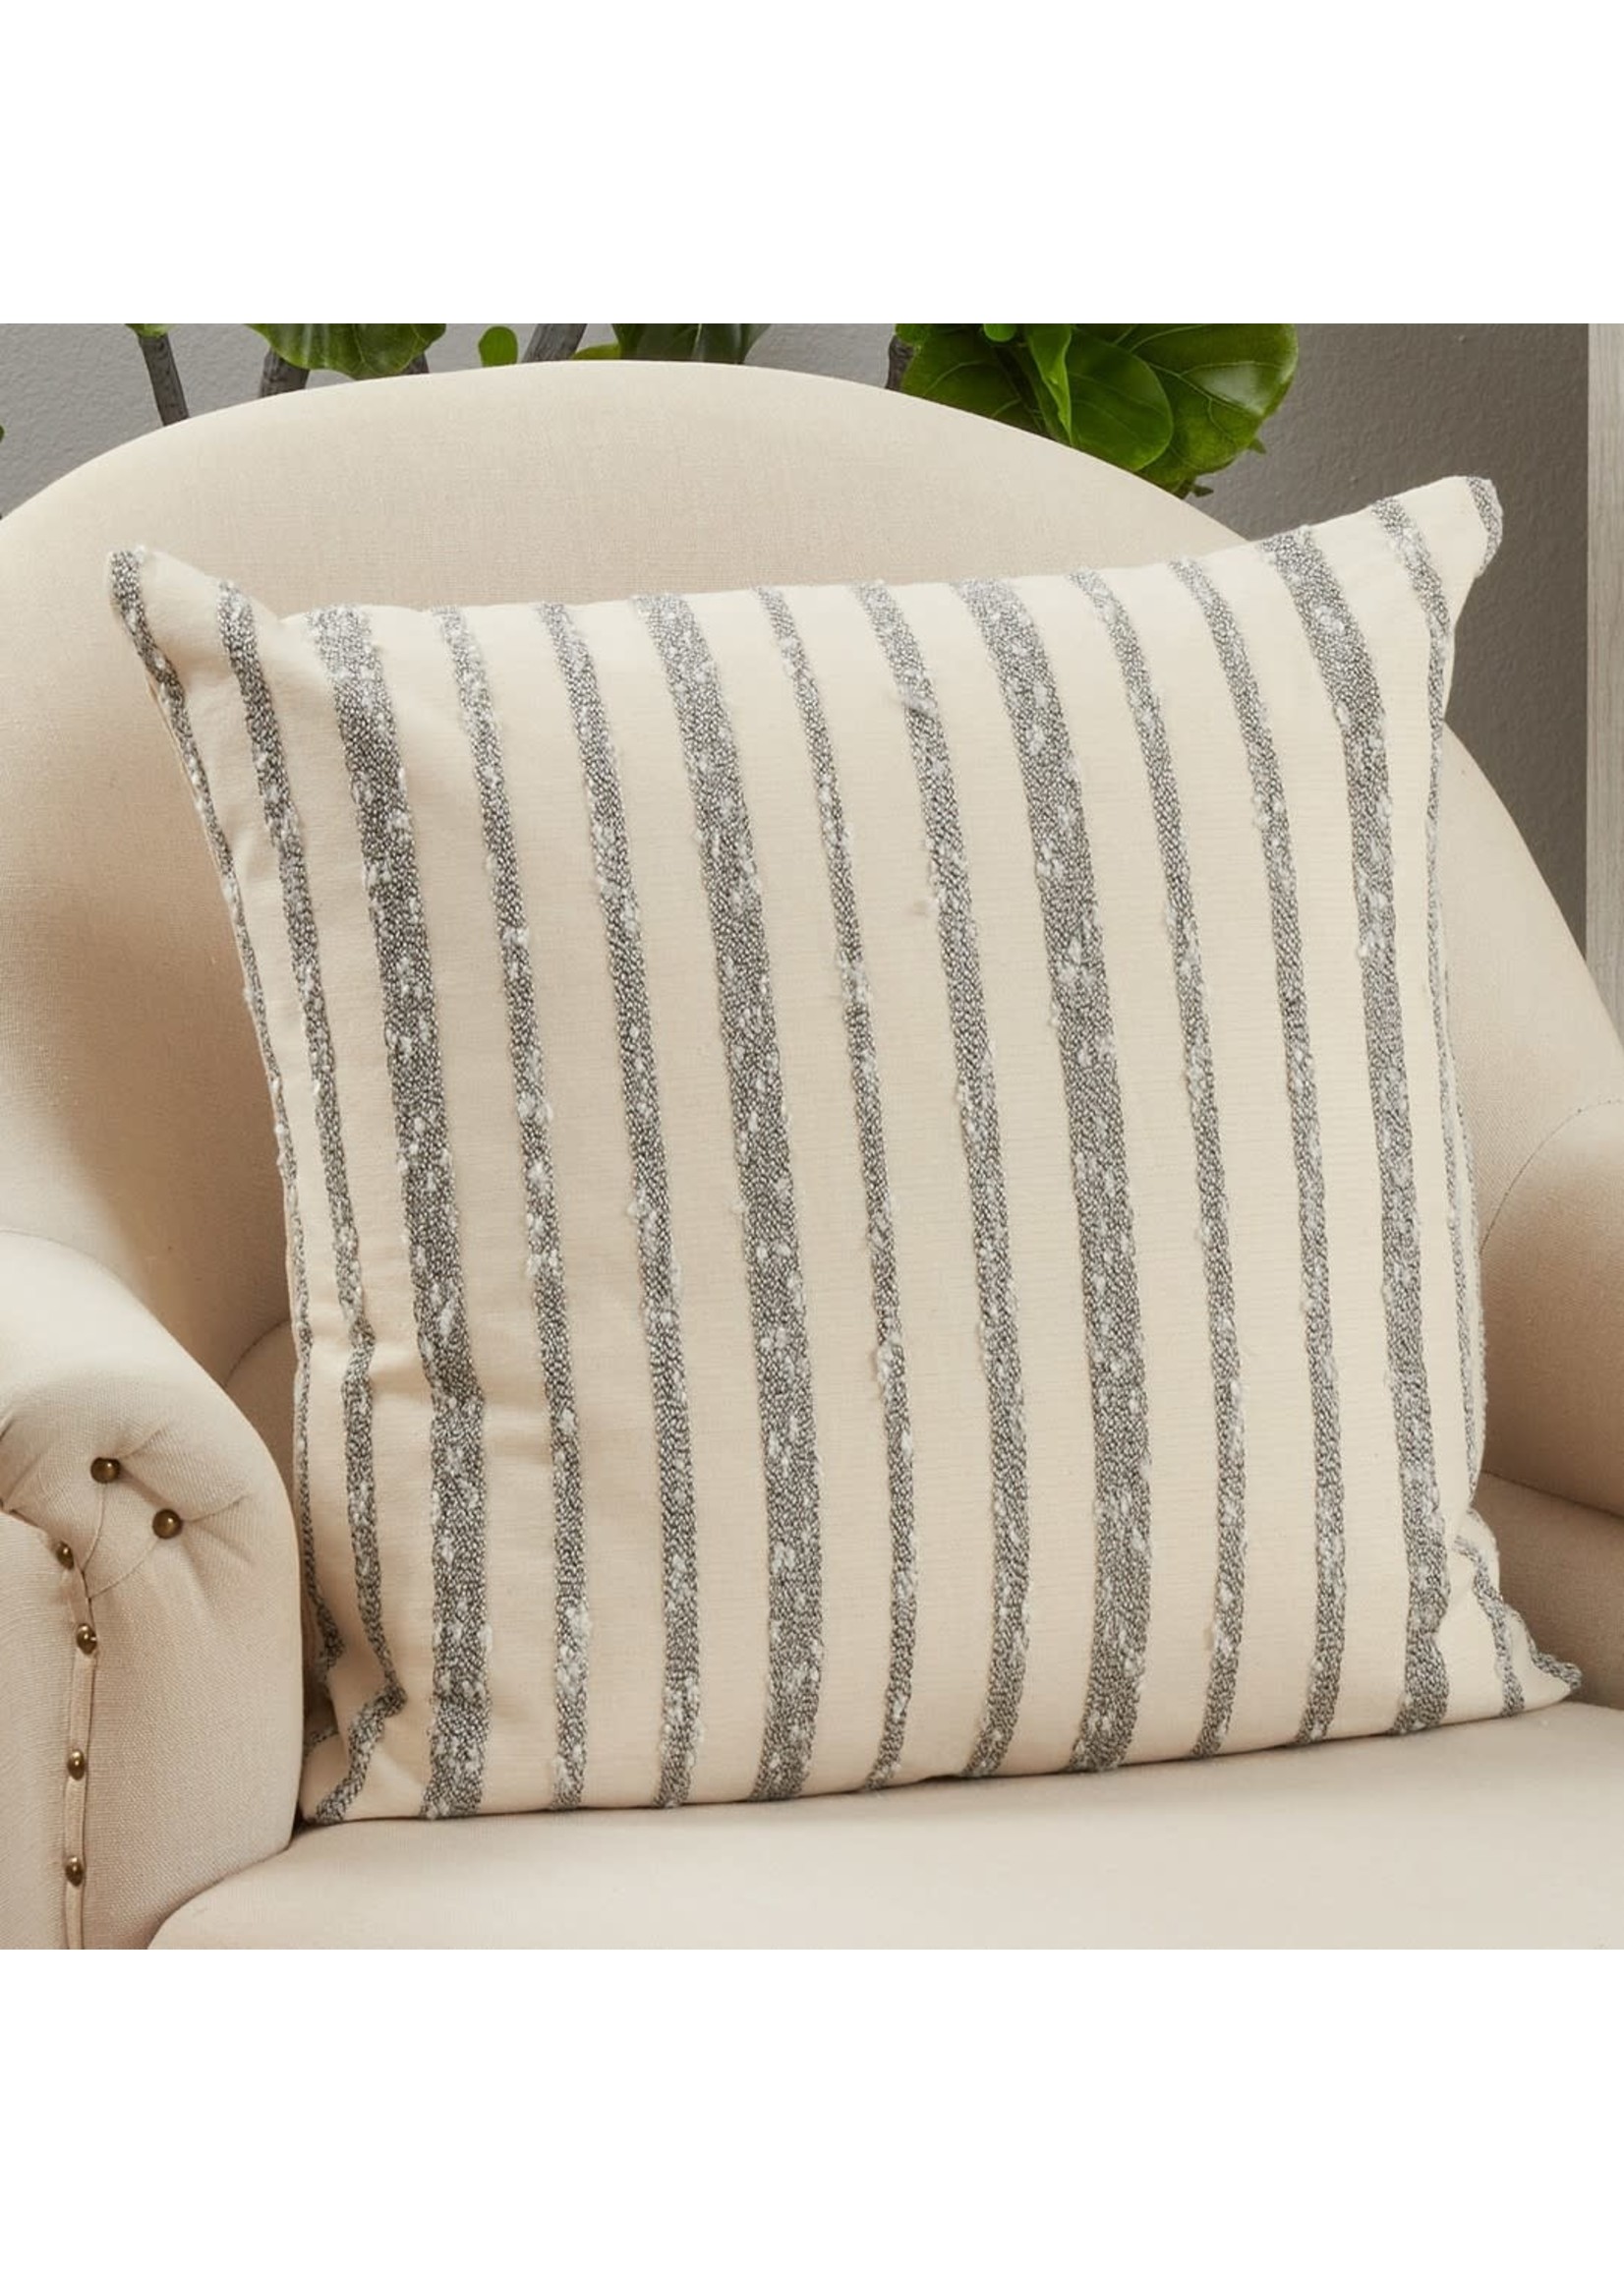 Saro Striped Pillow Down Filled Black White 22"sq